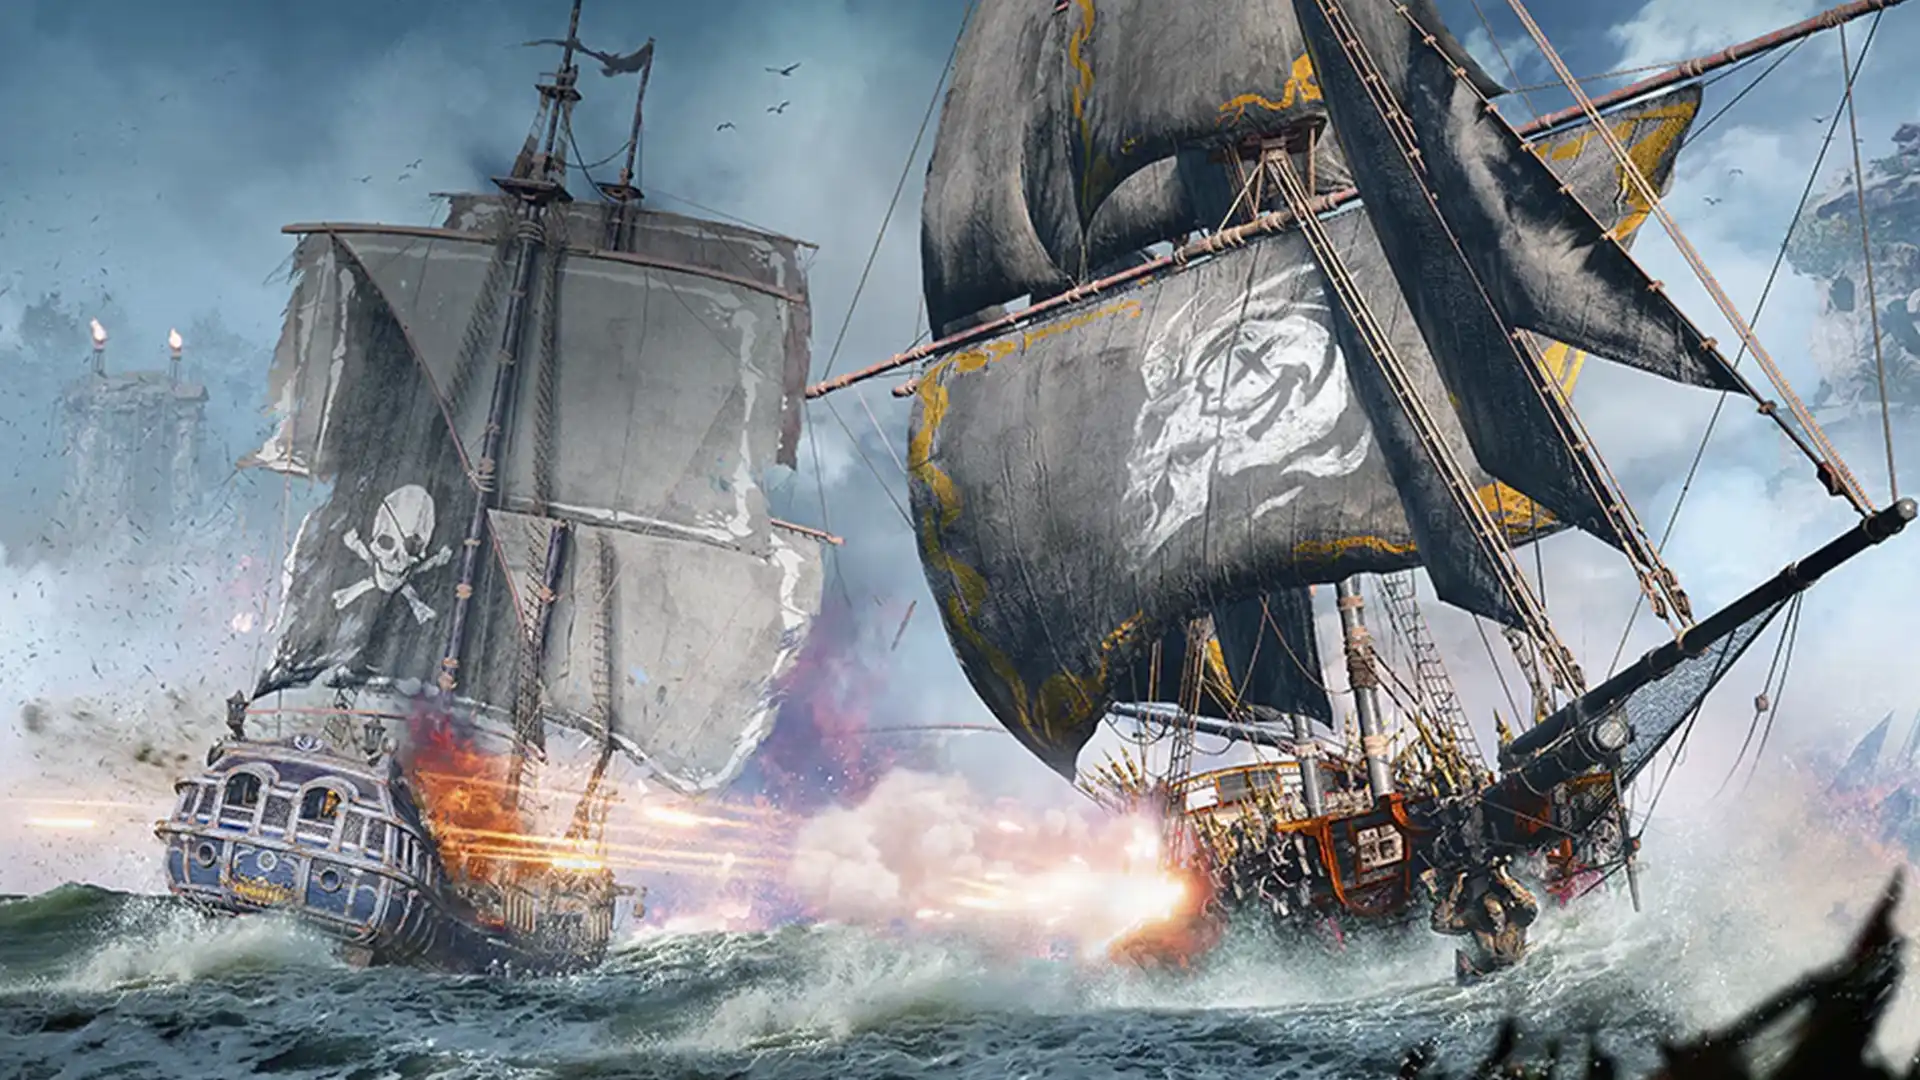 Пиратские корабли в бою на фоне разбушевавшегося моря.